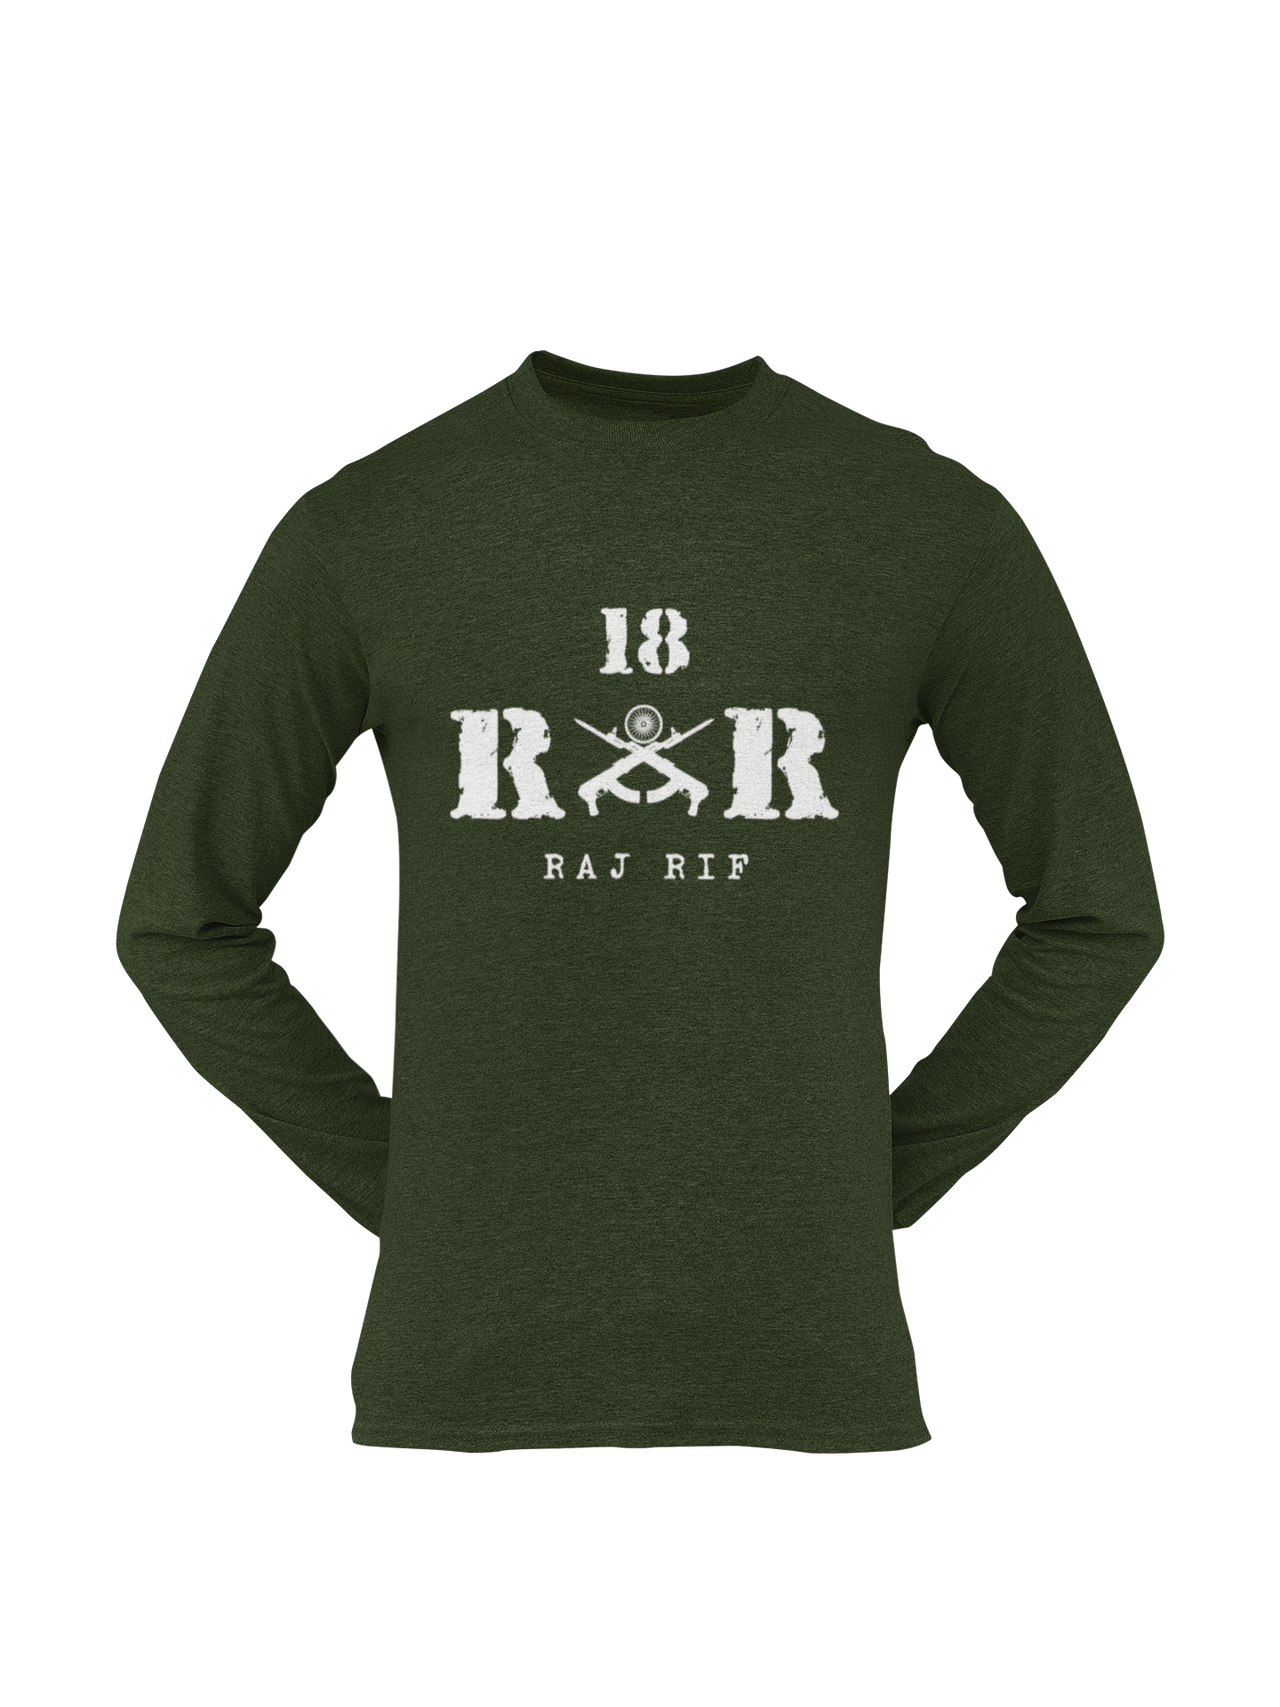 Rashtriya Rifles T-shirt - 18 RR Raj Rif (Men)